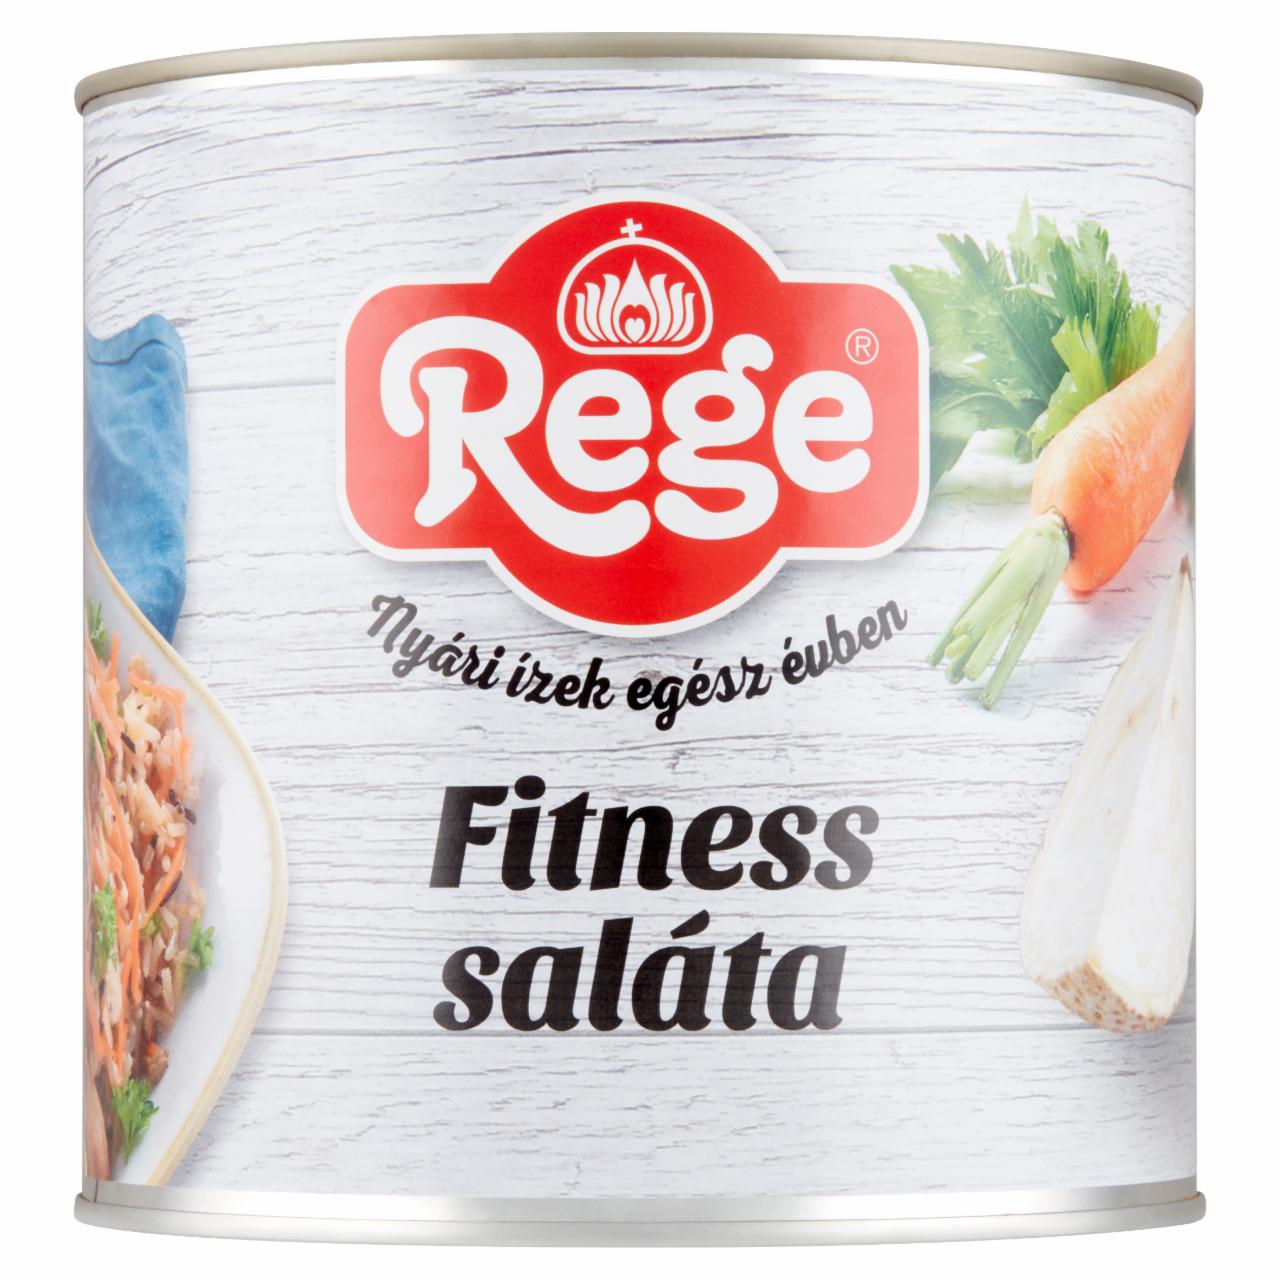 Képek - Rege fitness saláta 2700 g